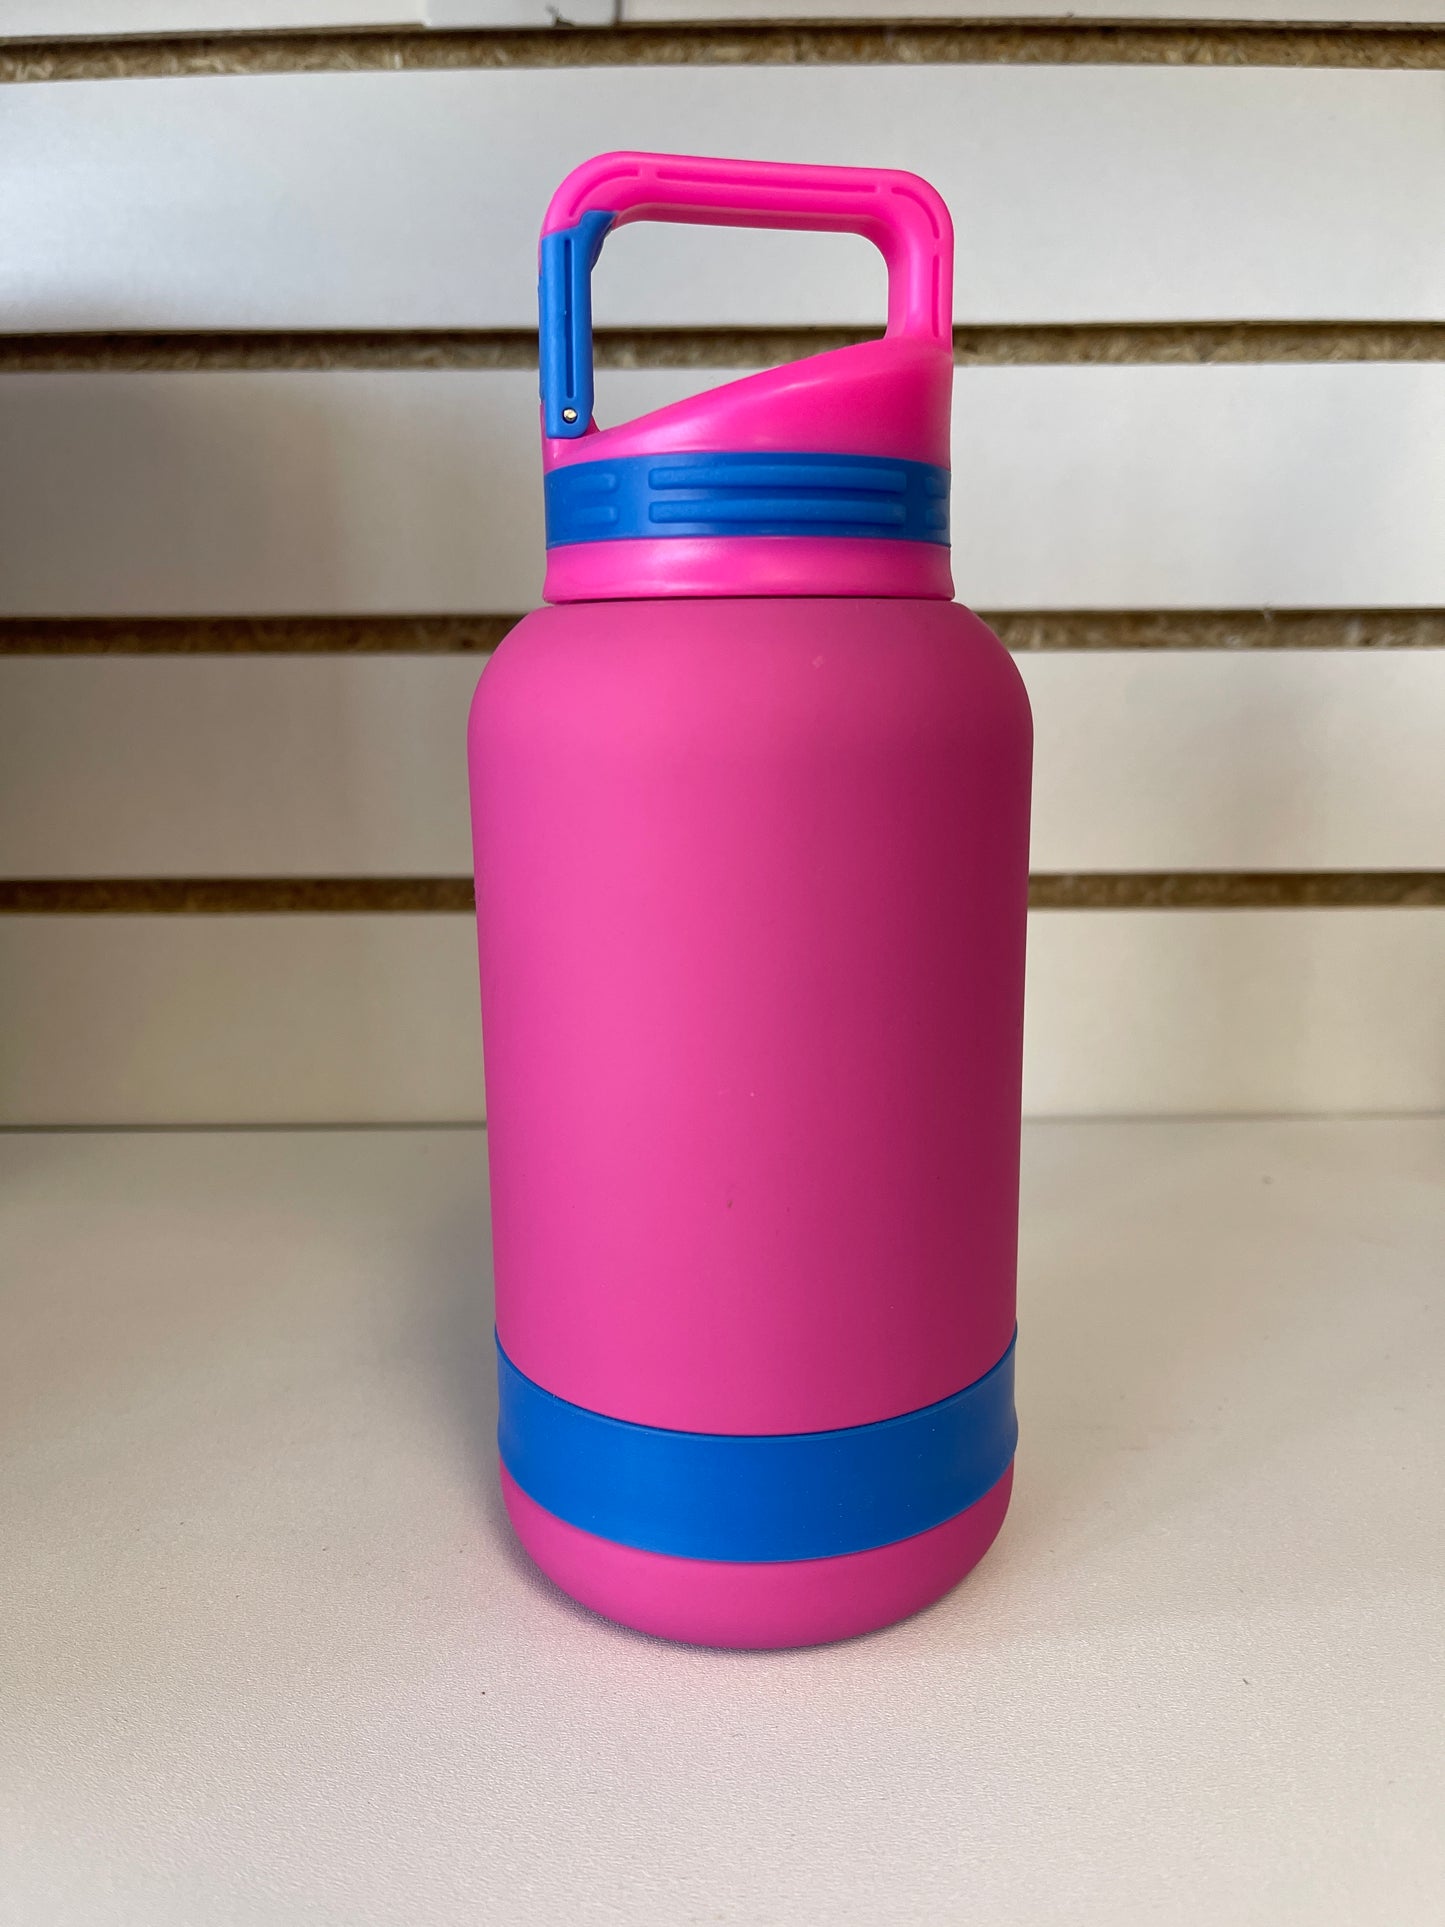 Subzero water bottle